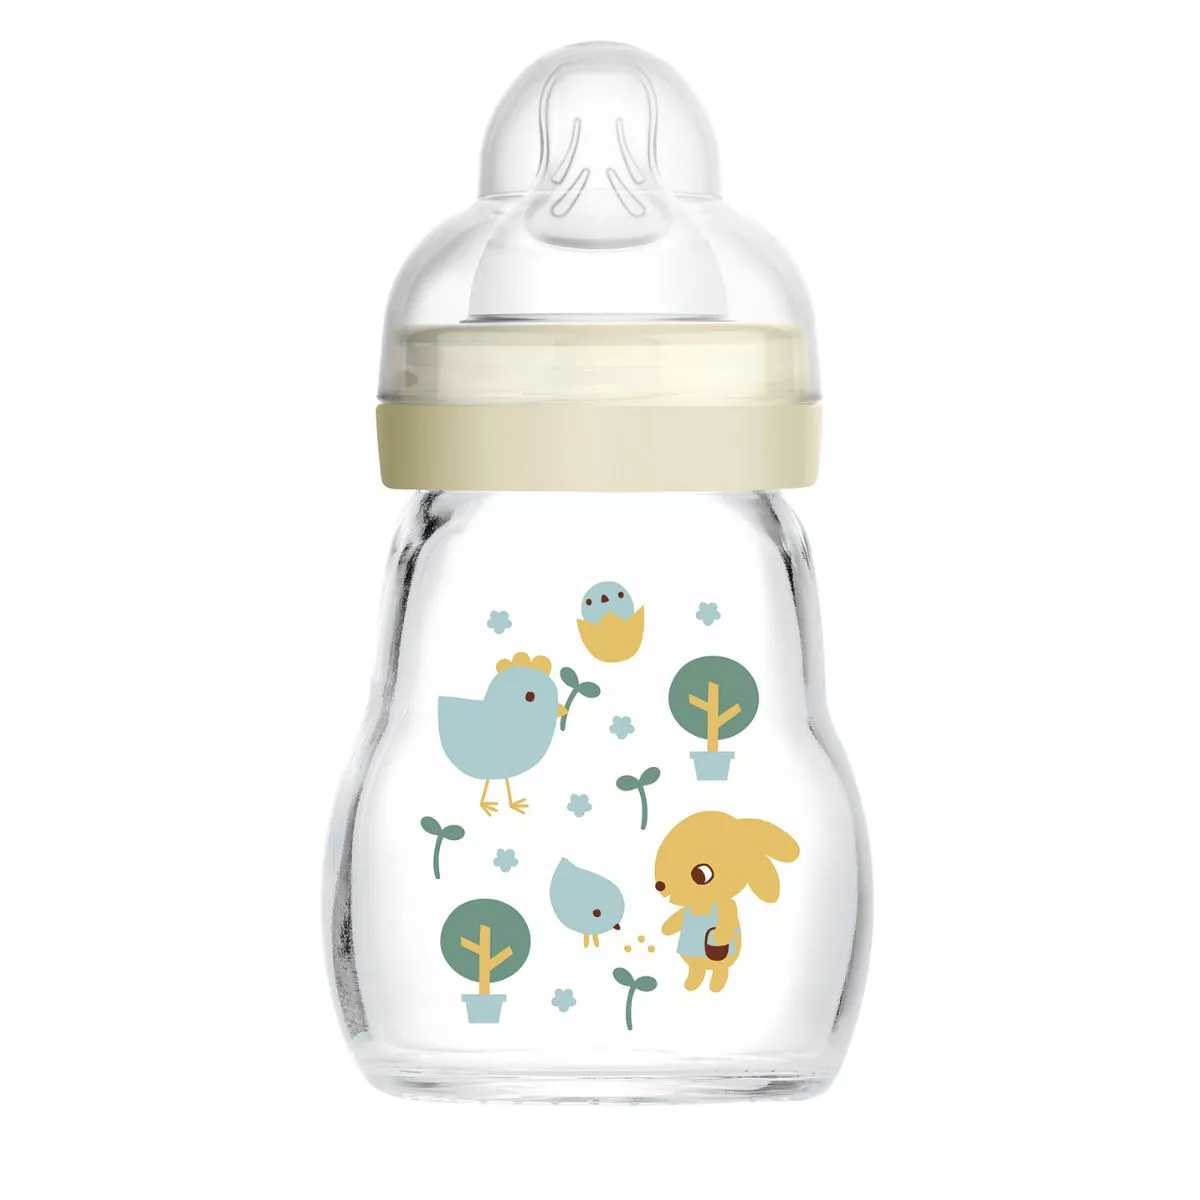 MAM Feel Good 170ml Glass Baby Bottle 0+ months, single pack